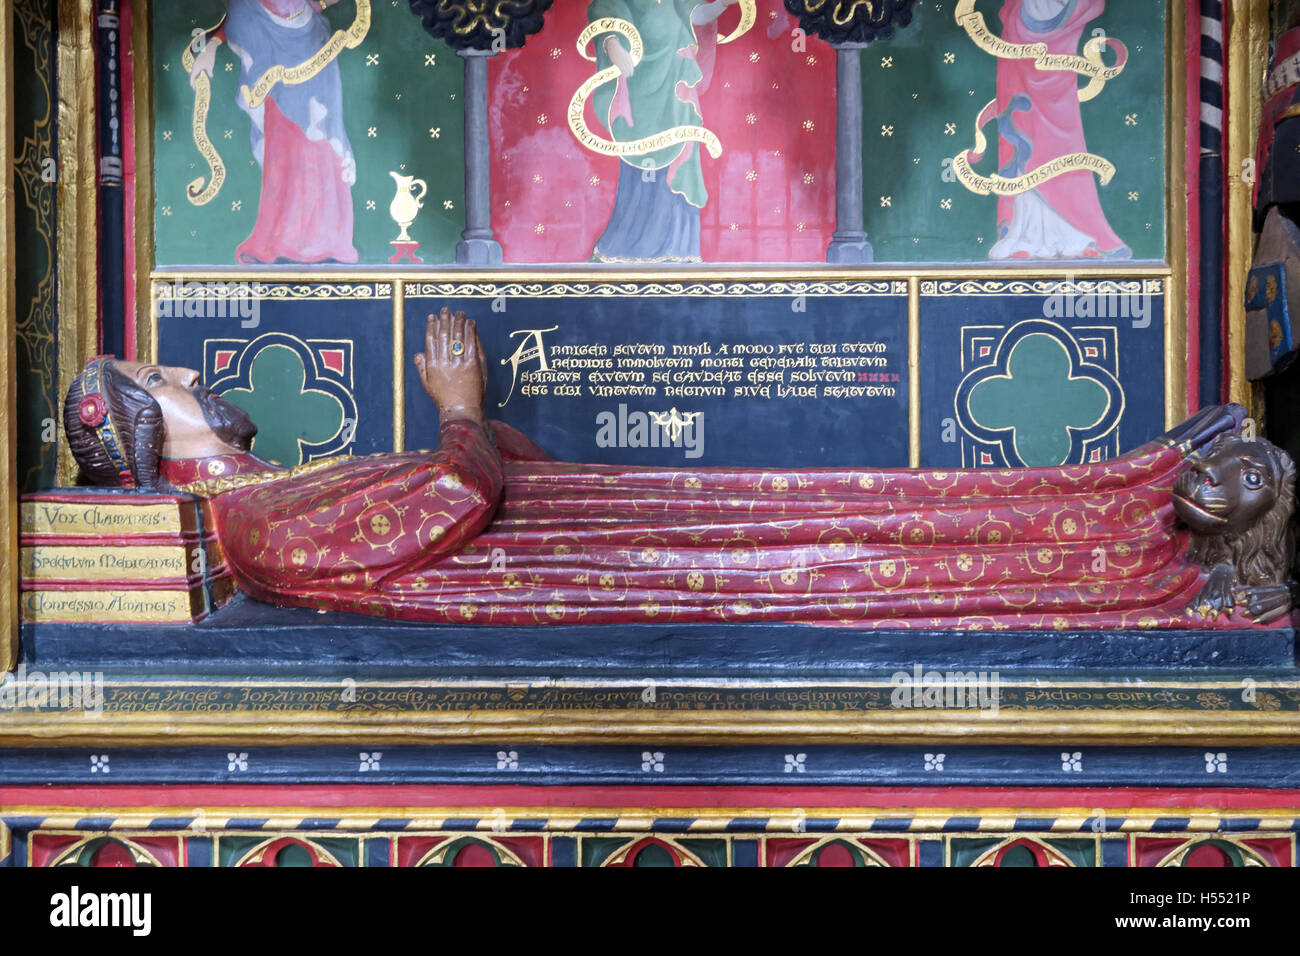 Tombe de John Gower, cathédrale de Southwark, Londres, Angleterre, Royaume-Uni - Détail de statue Banque D'Images